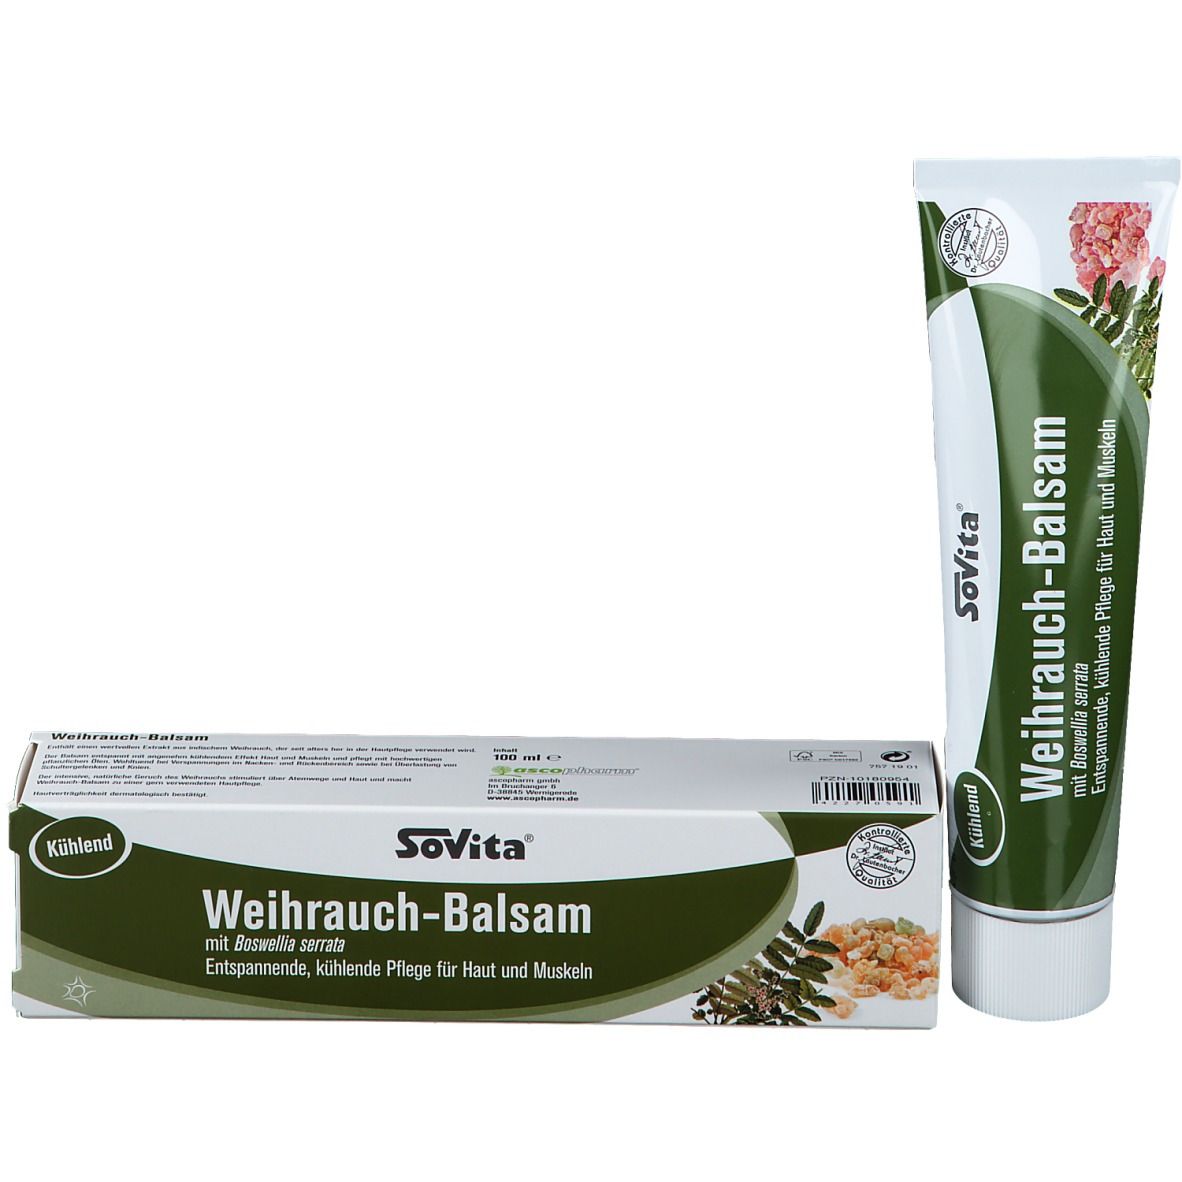 SoVitacare® Weihrauch-Balsam